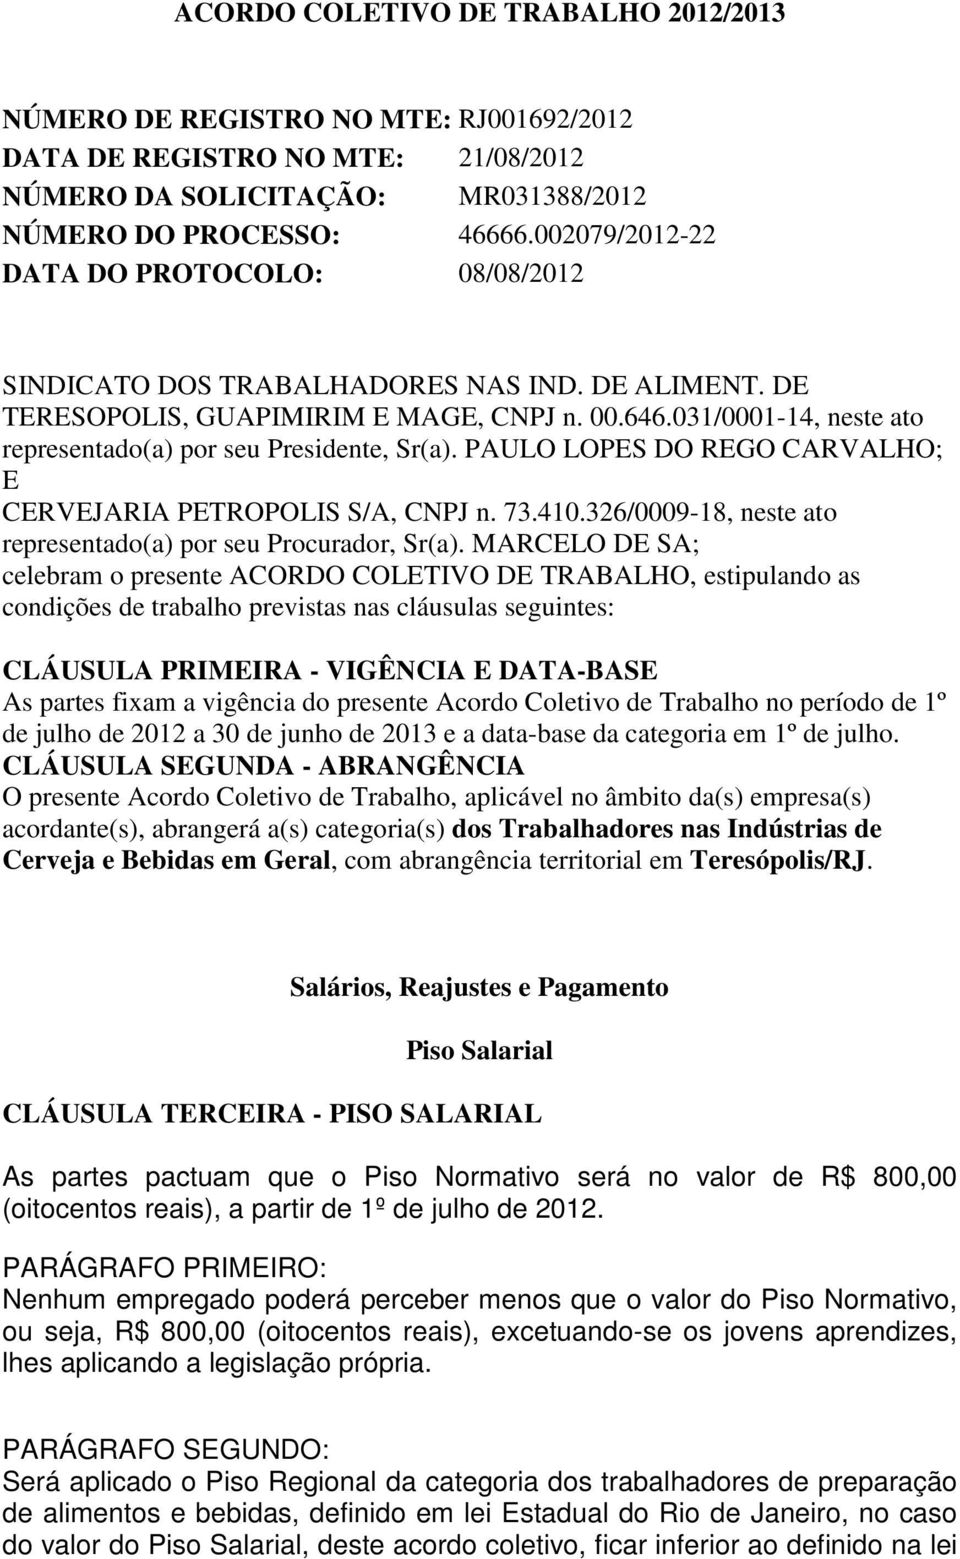 031/0001-14, neste ato representado(a) por seu Presidente, Sr(a). PAULO LOPES DO REGO CARVALHO; E CERVEJARIA PETROPOLIS S/A, CNPJ n. 73.410.